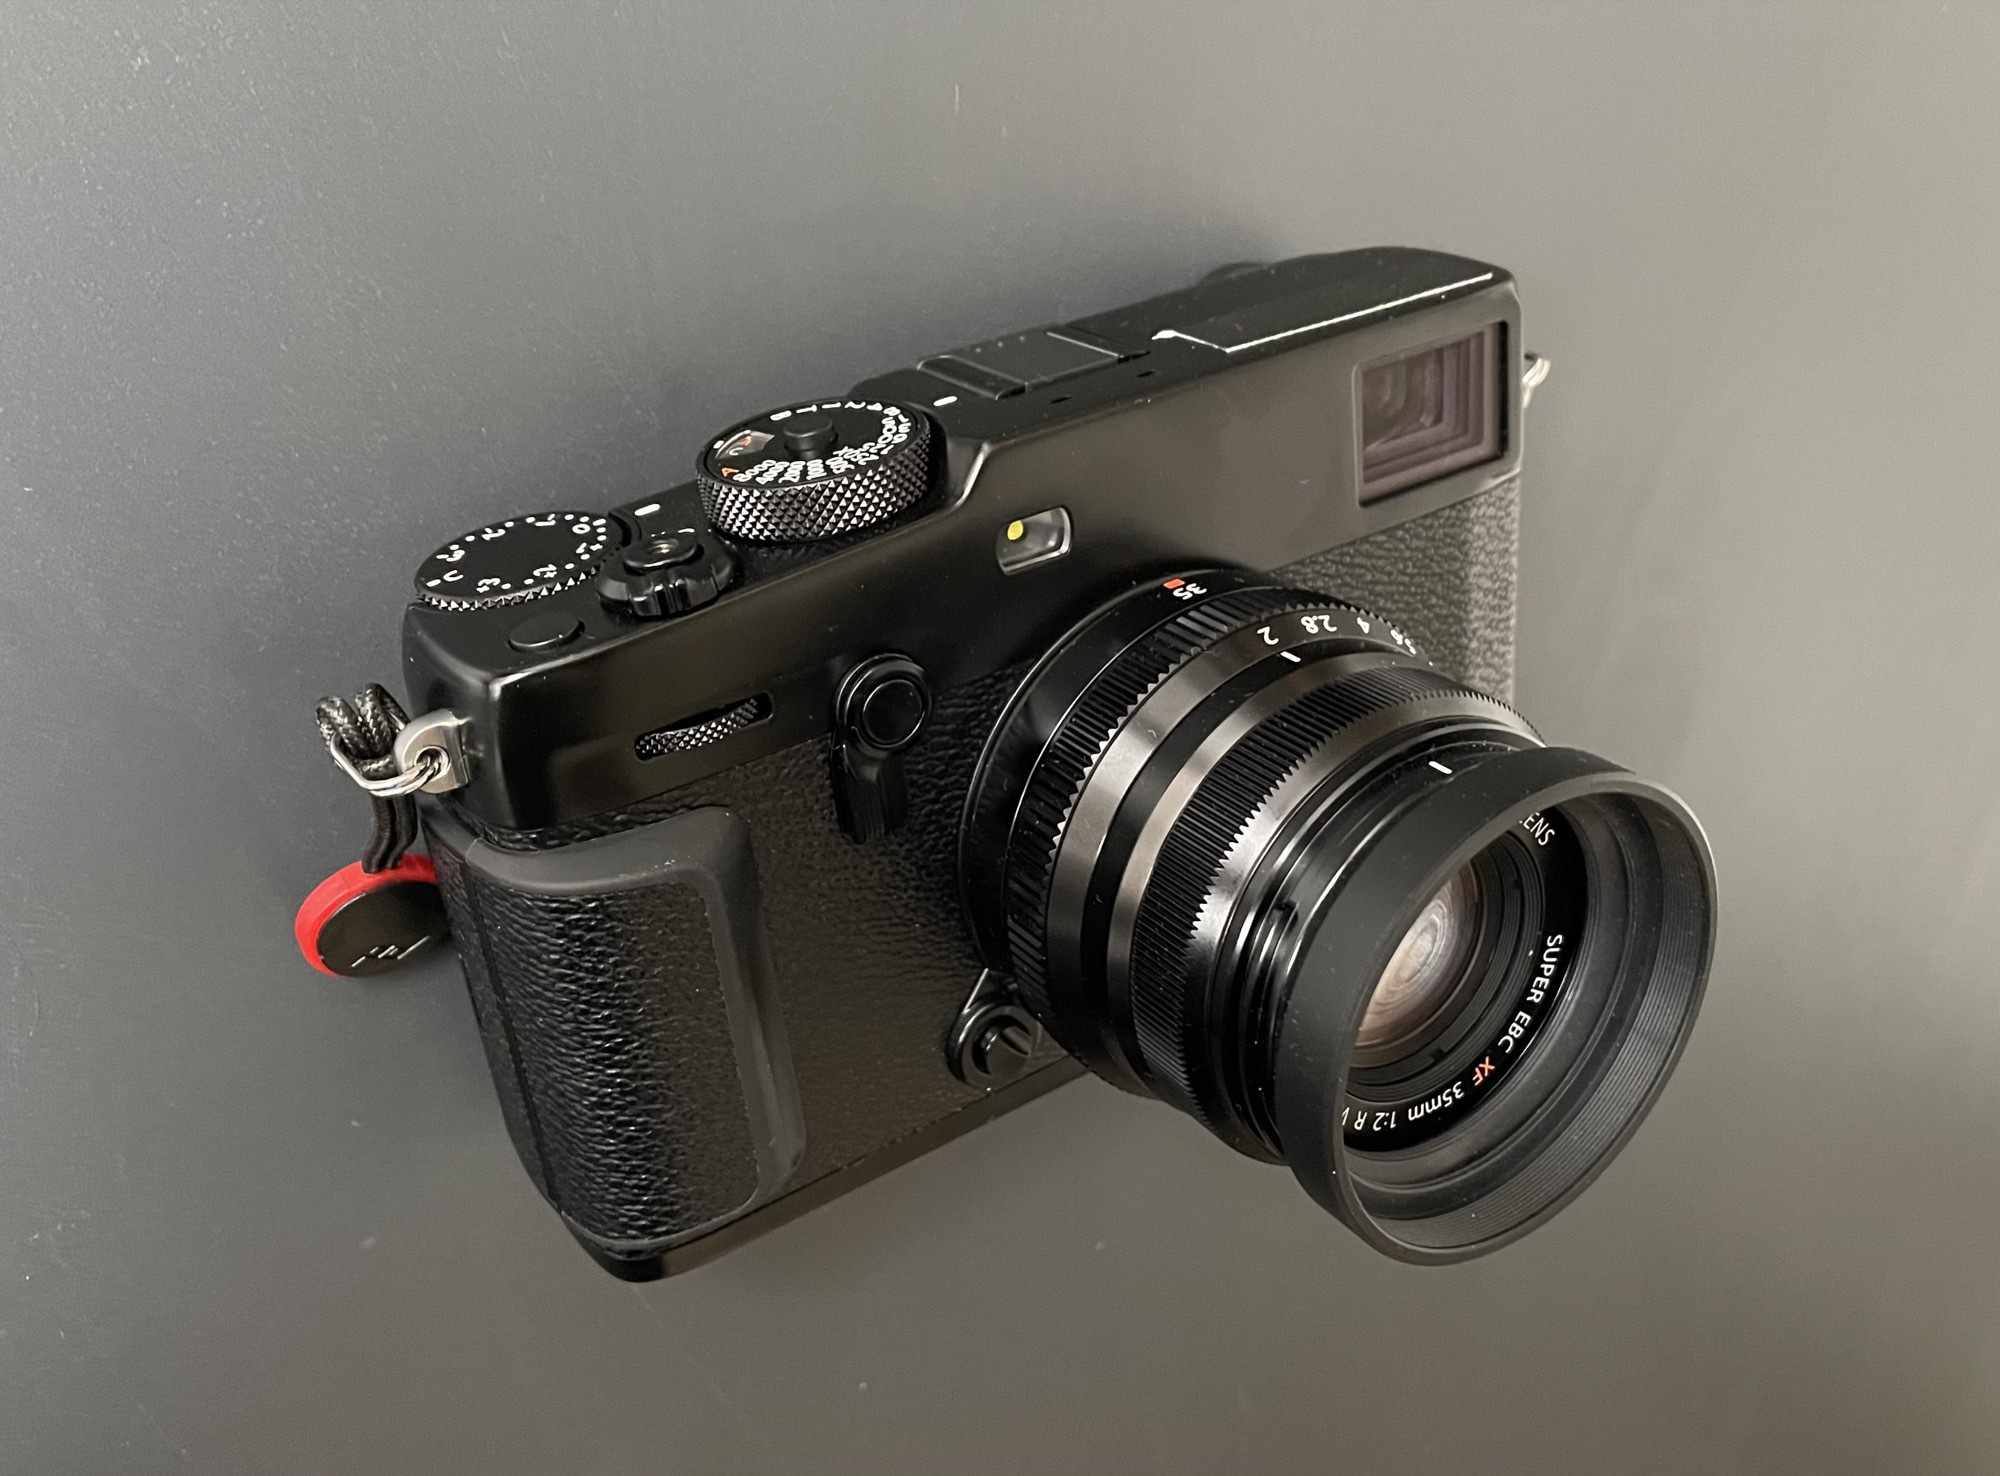 De Fujifilm X-Pro3 camera met een verlengde lens.